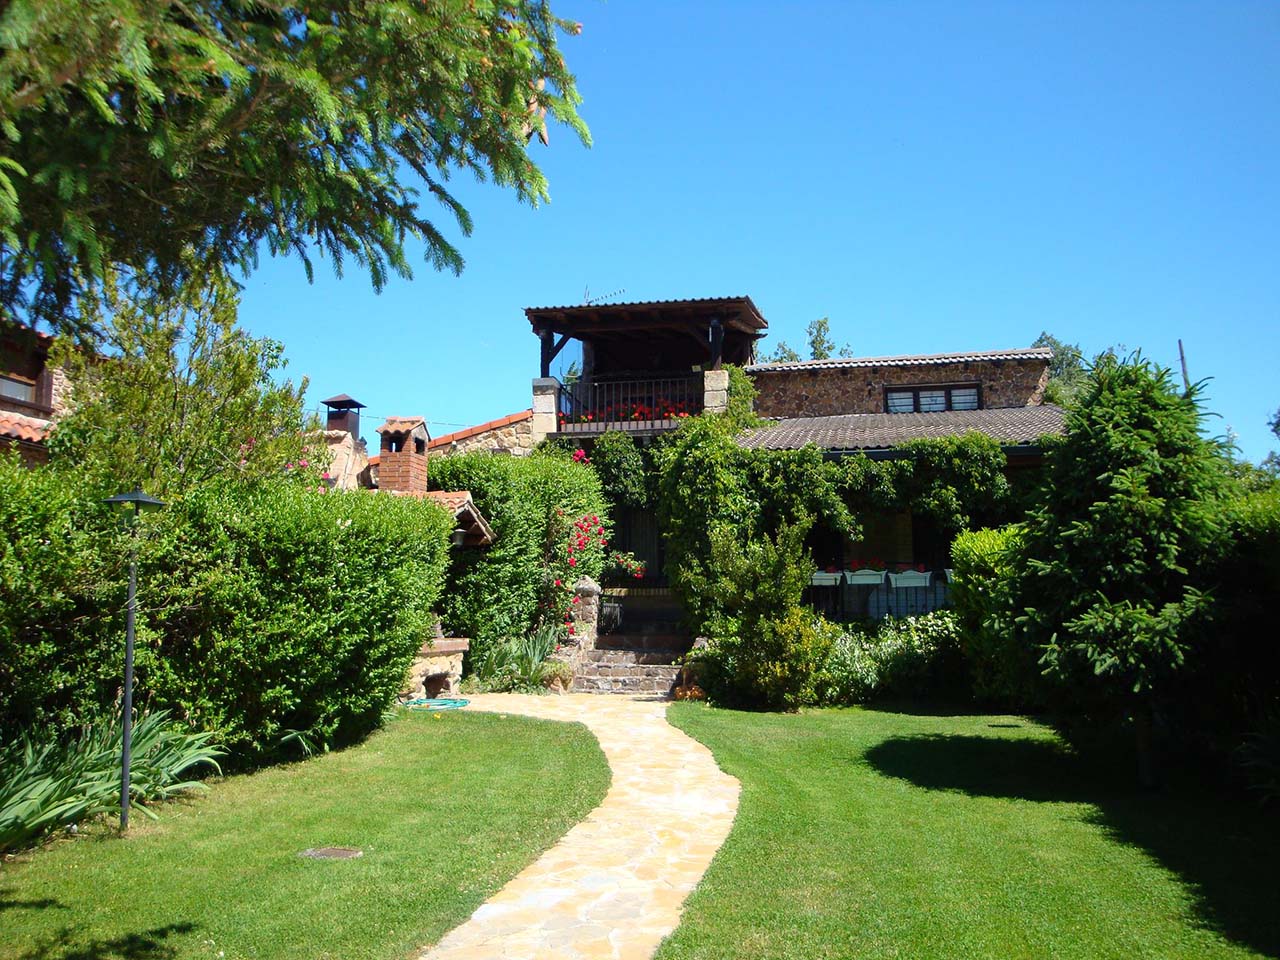 Alquiler de Casa Rural El Porche en Villaverde del Monte, Cidones, Soria.